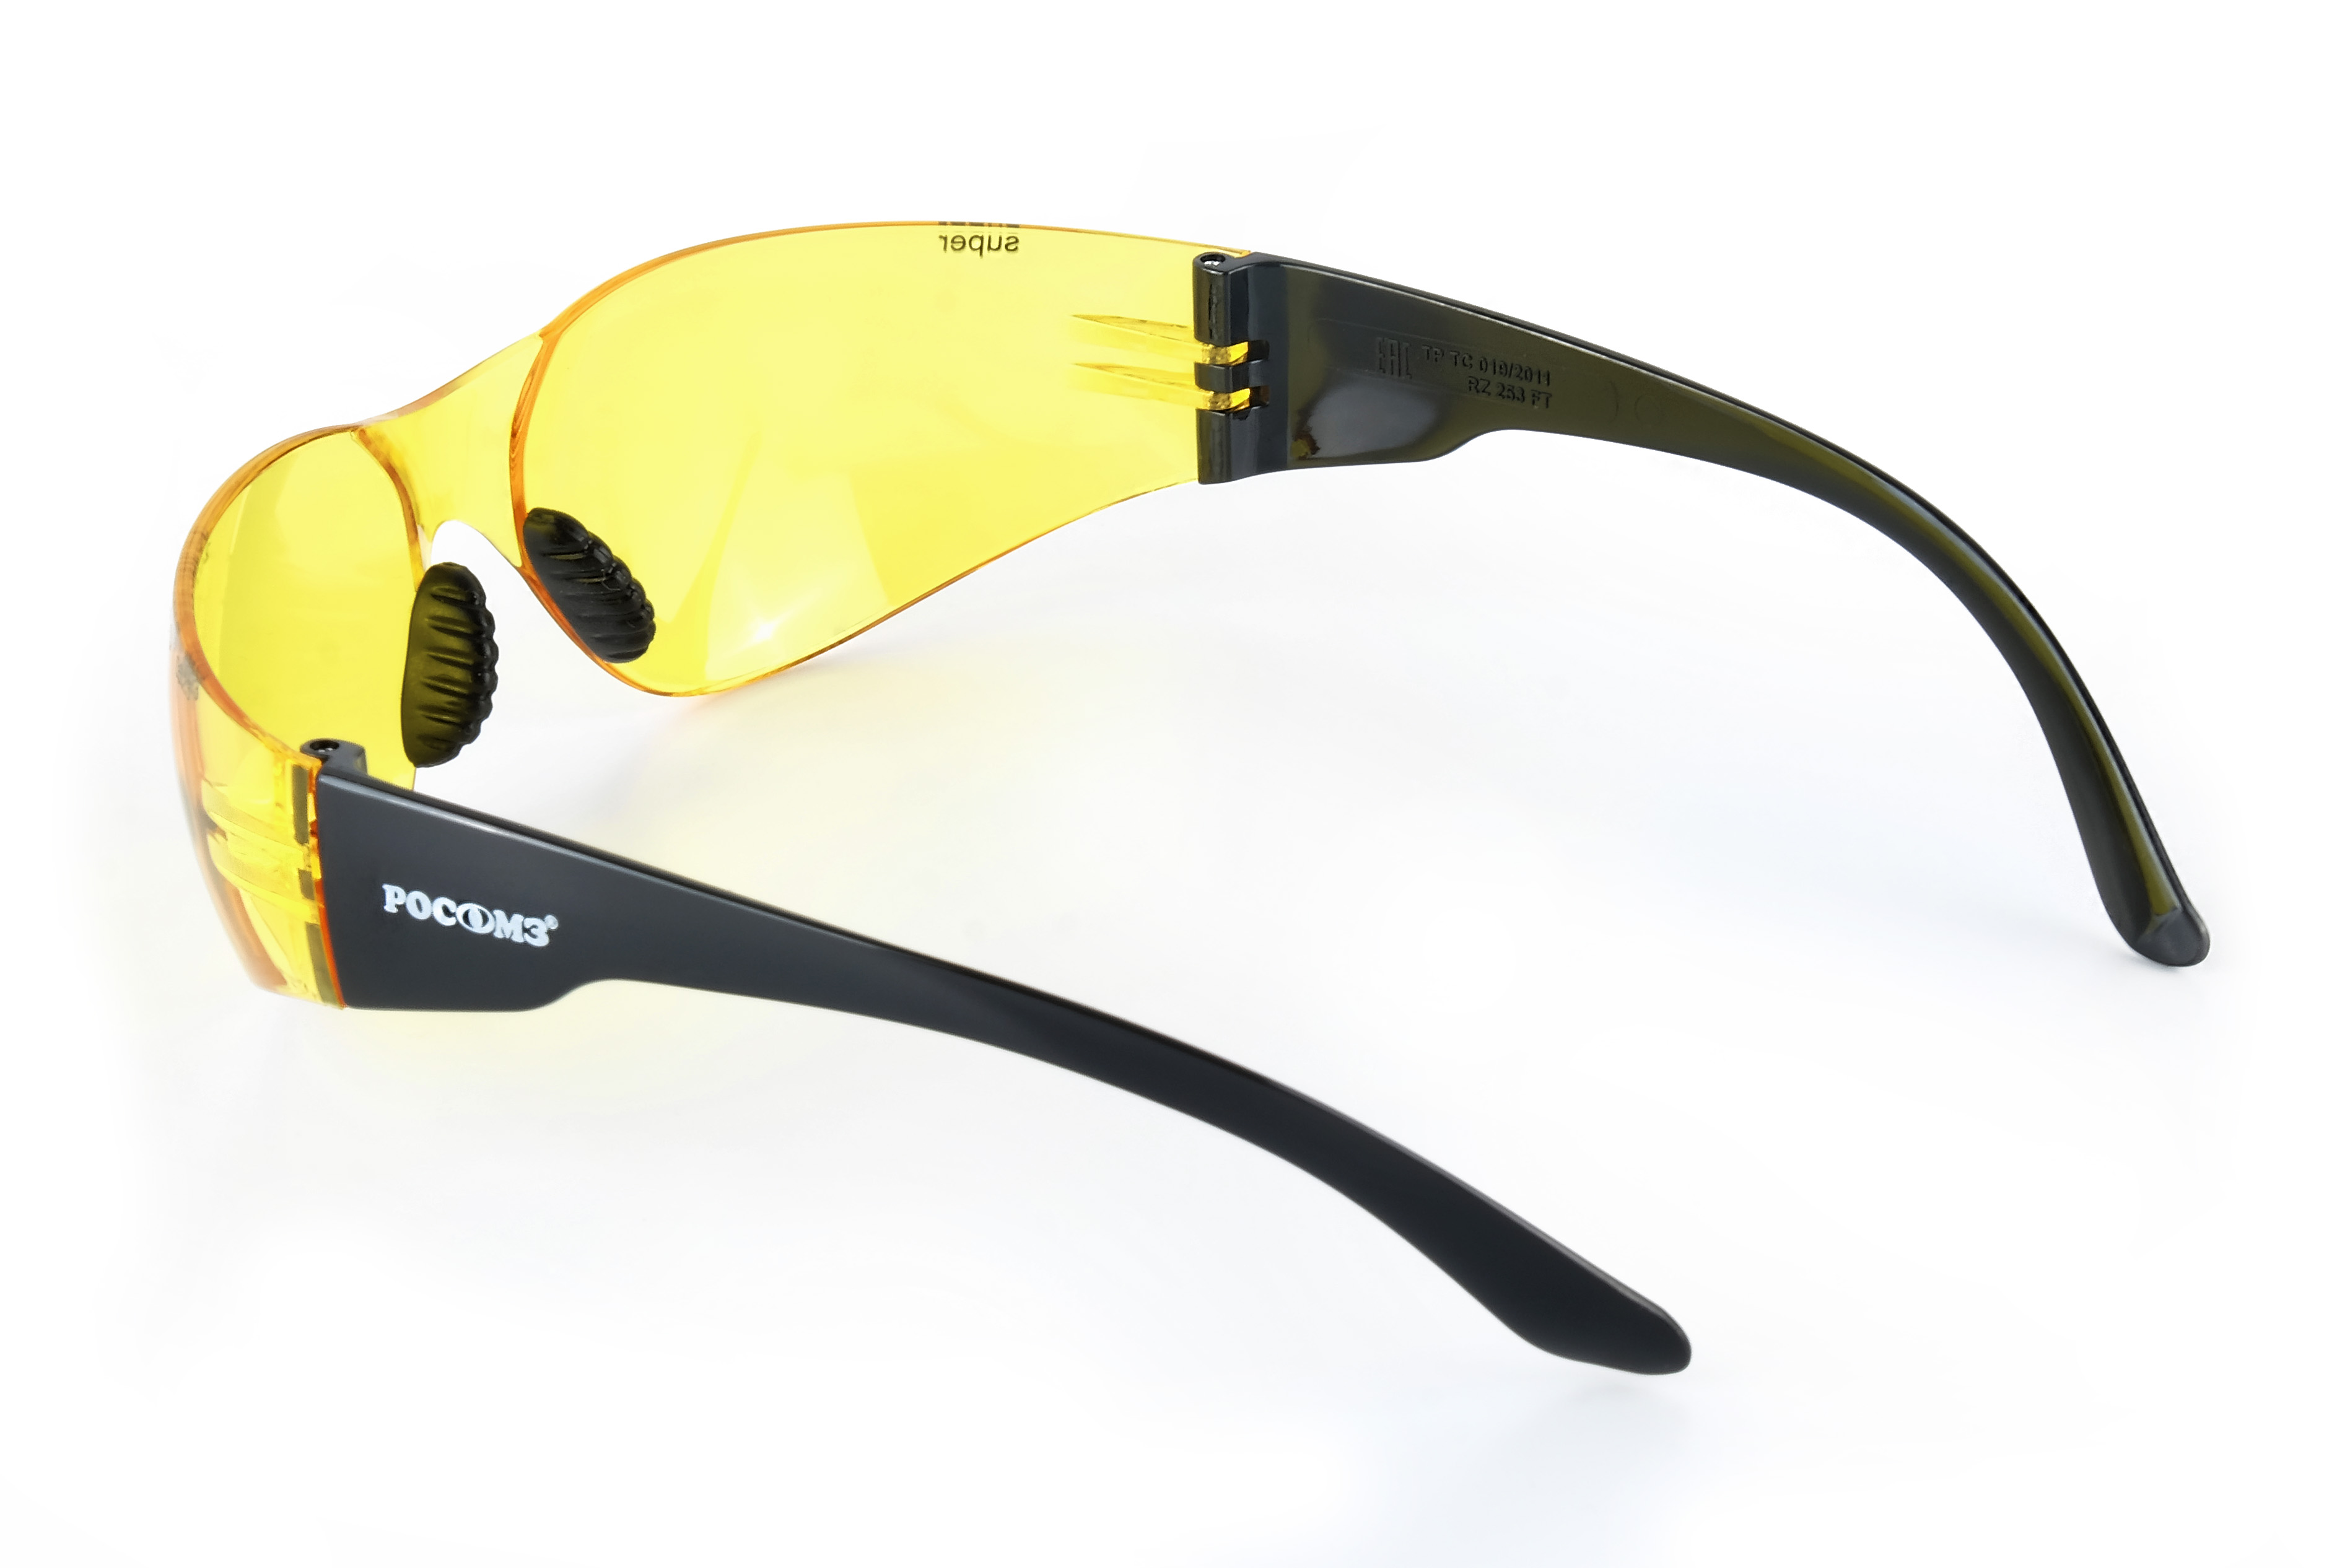 О15 HAMMER ACTIVЕ CONTRAST super (2-1,2 PC)  очки защитные открытые с мягким носоупором